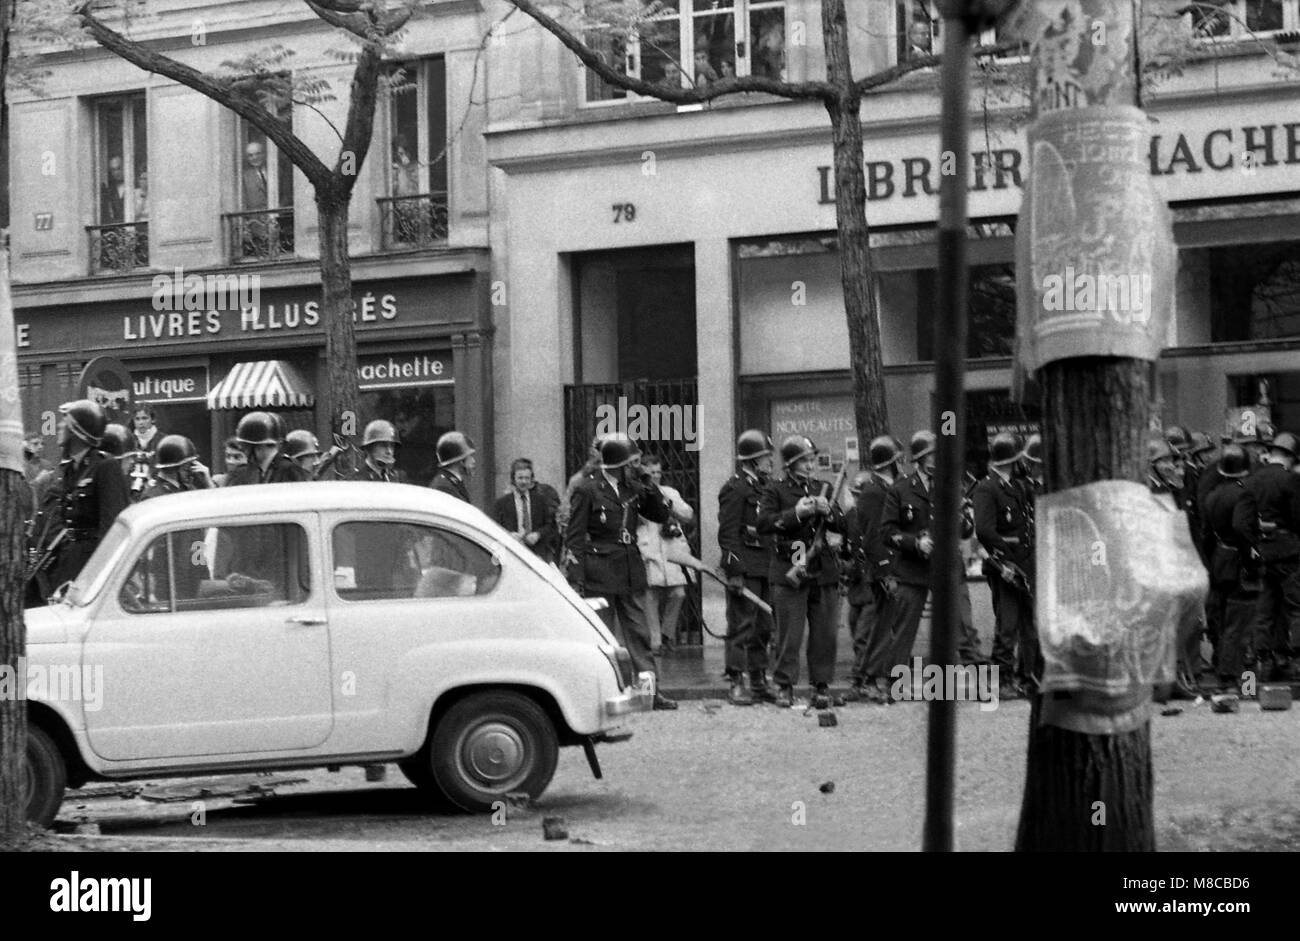 Philippe Gras / Le Pictorium -  May 68 -  1968  -  France / Ile-de-France (region) / Paris  -  Police force waiting Stock Photo